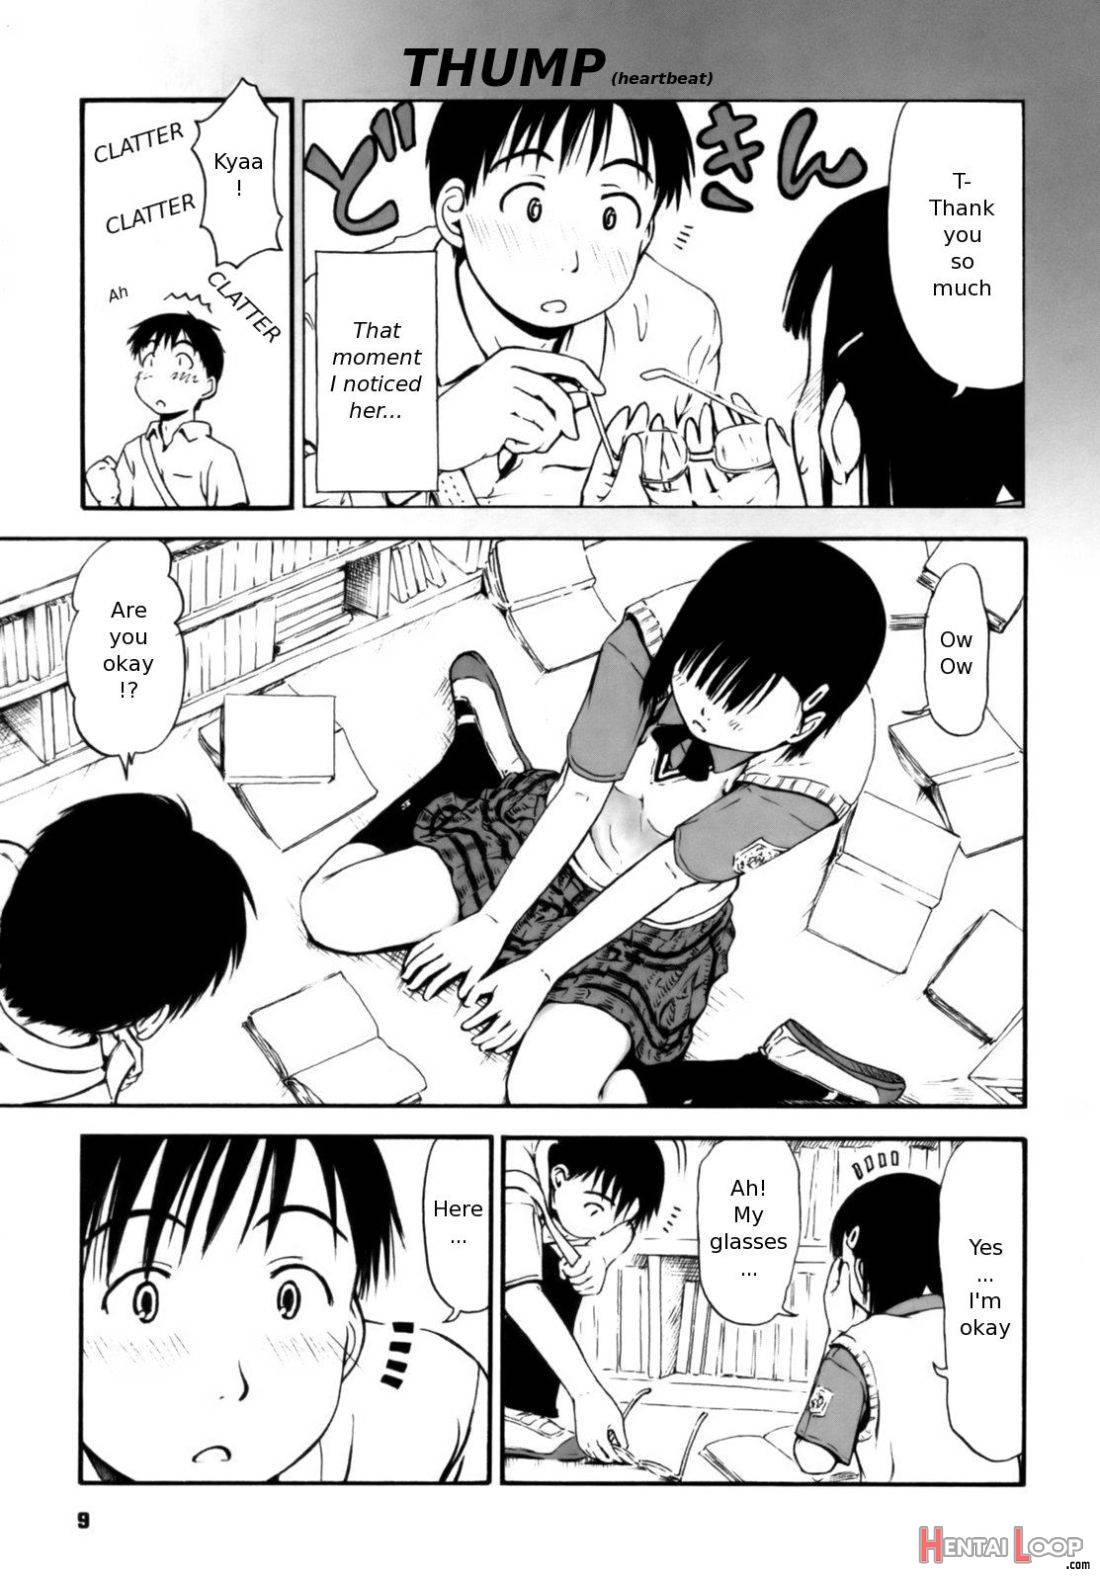 Nagano-san no ??? page 5